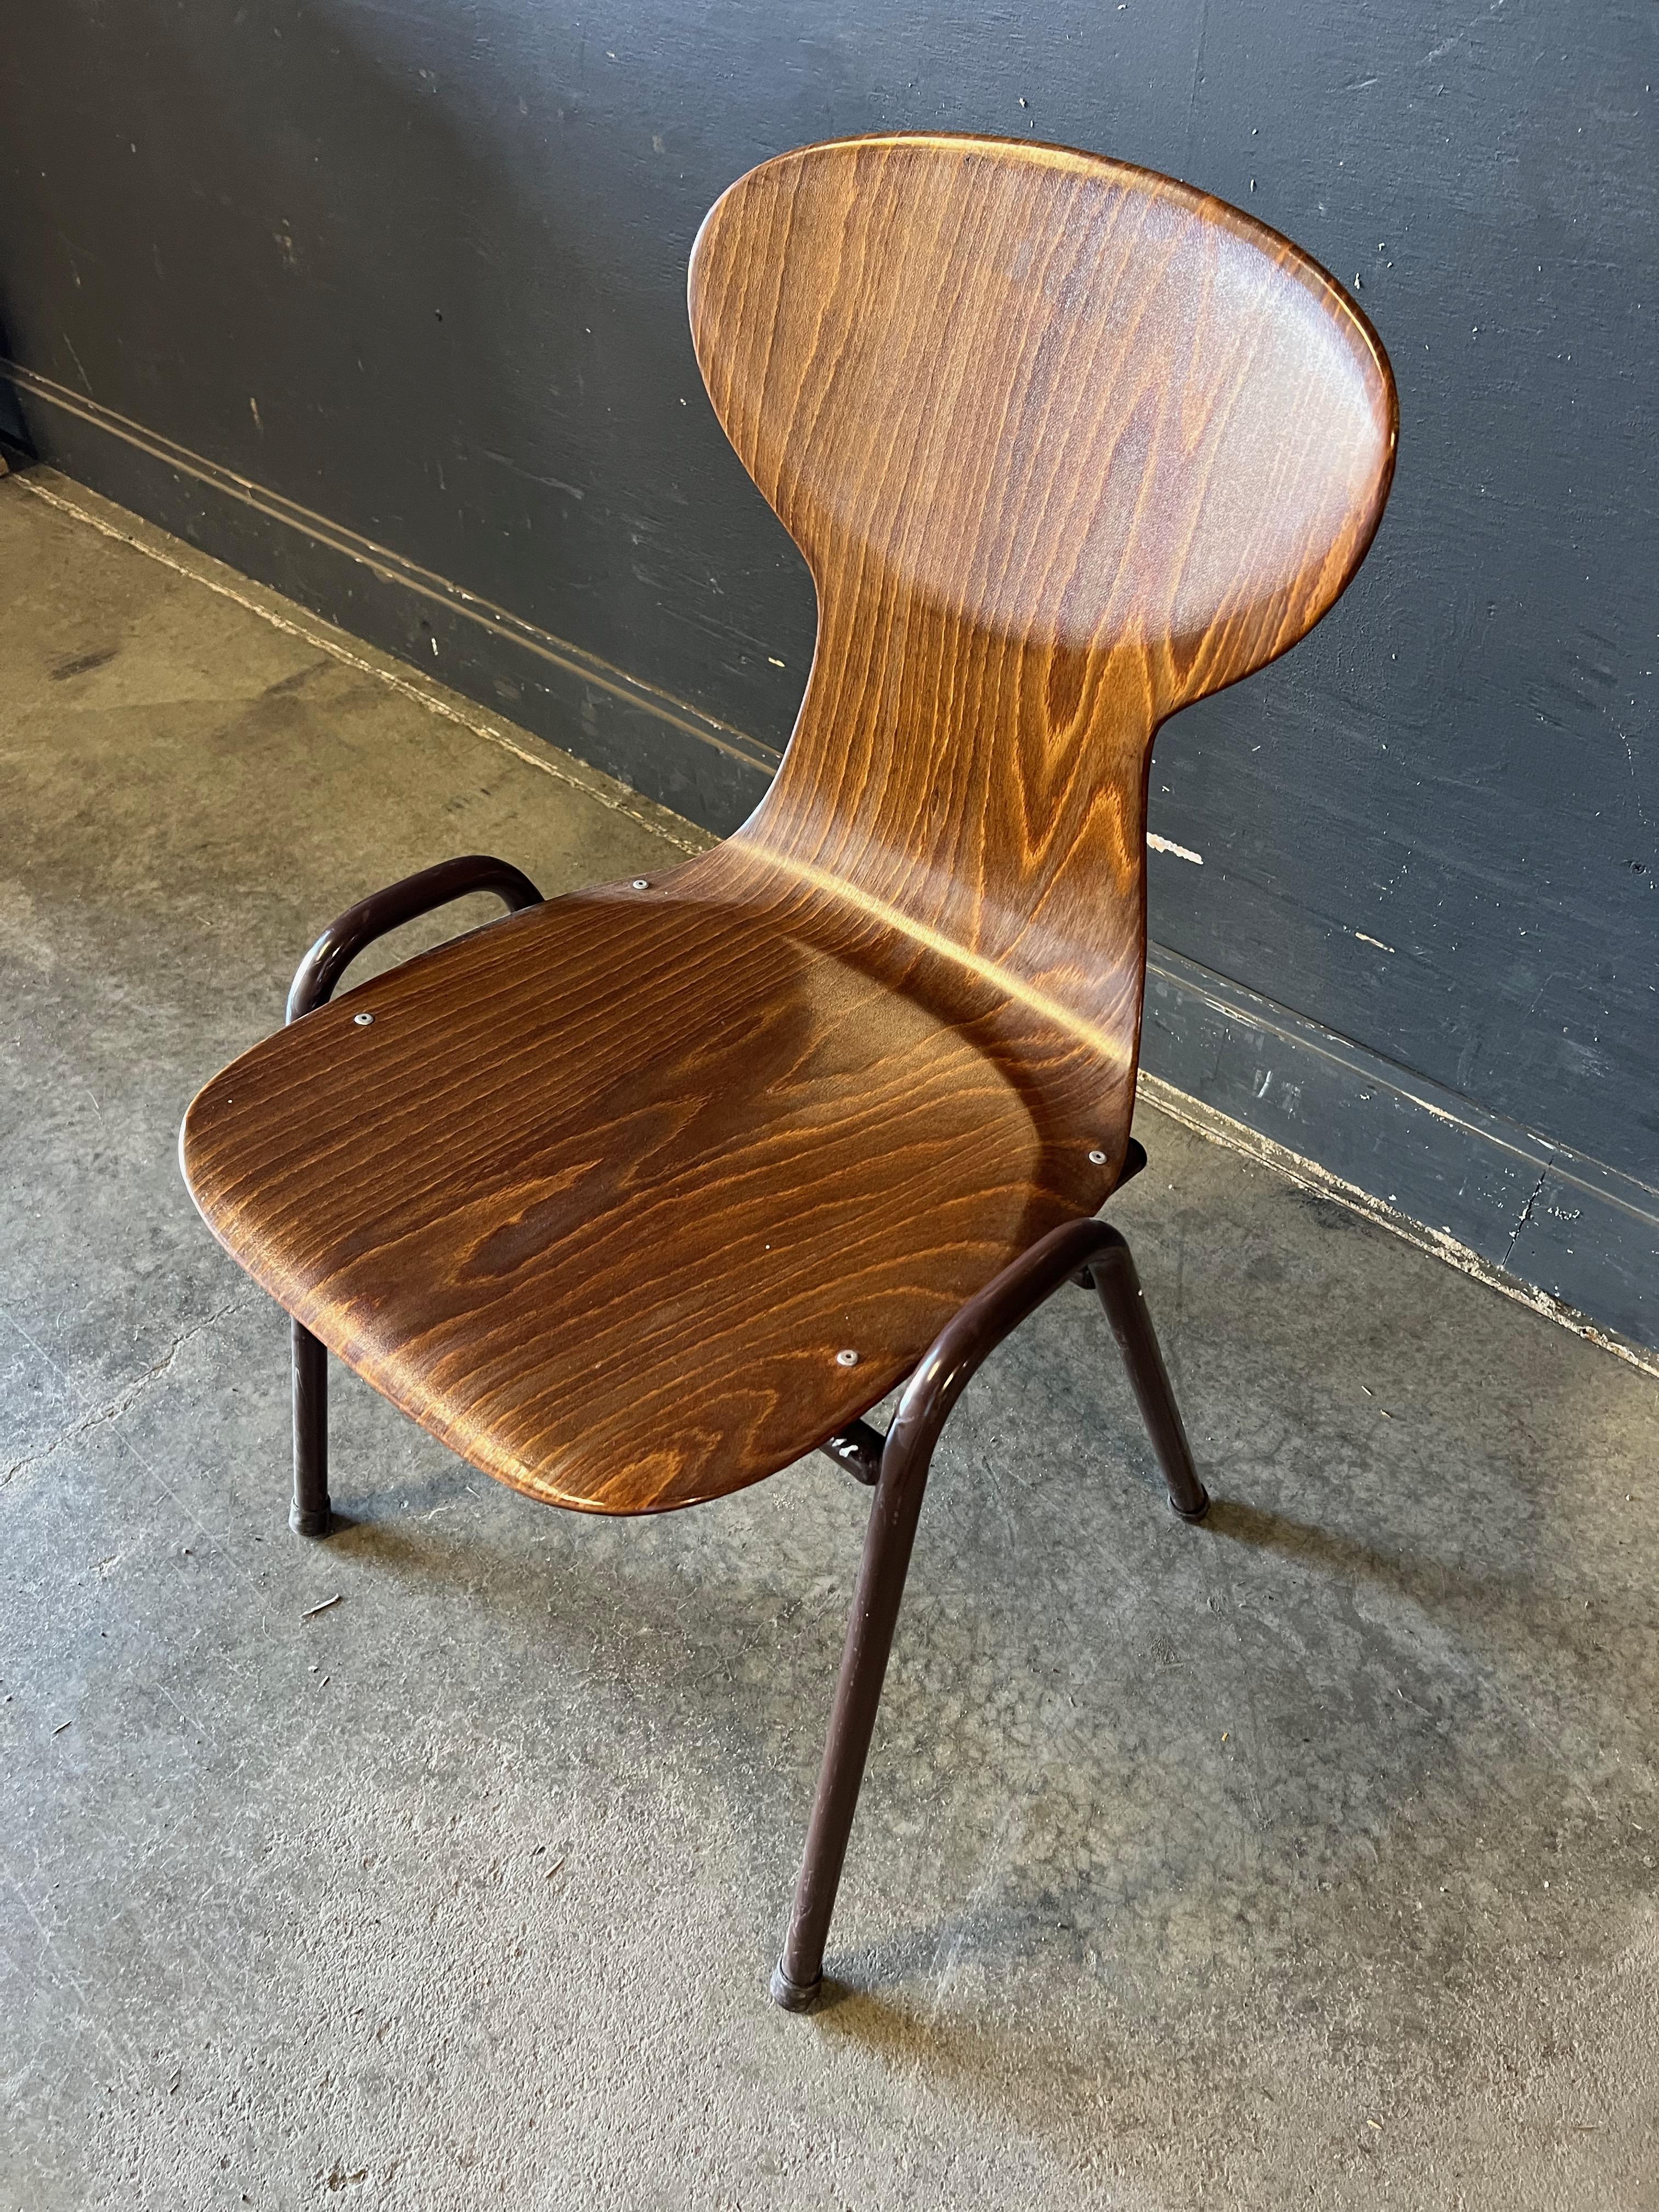 Chaise empilable OBO en bois et métal, Hollande, années 1960-1970, par Obo Eromes. Ce modèle élancé et arrondi est inhabituel et magnifique. Malgré sa forme délicate, la chaise est très solide et confortable, avec un soutien lombaire et une assise